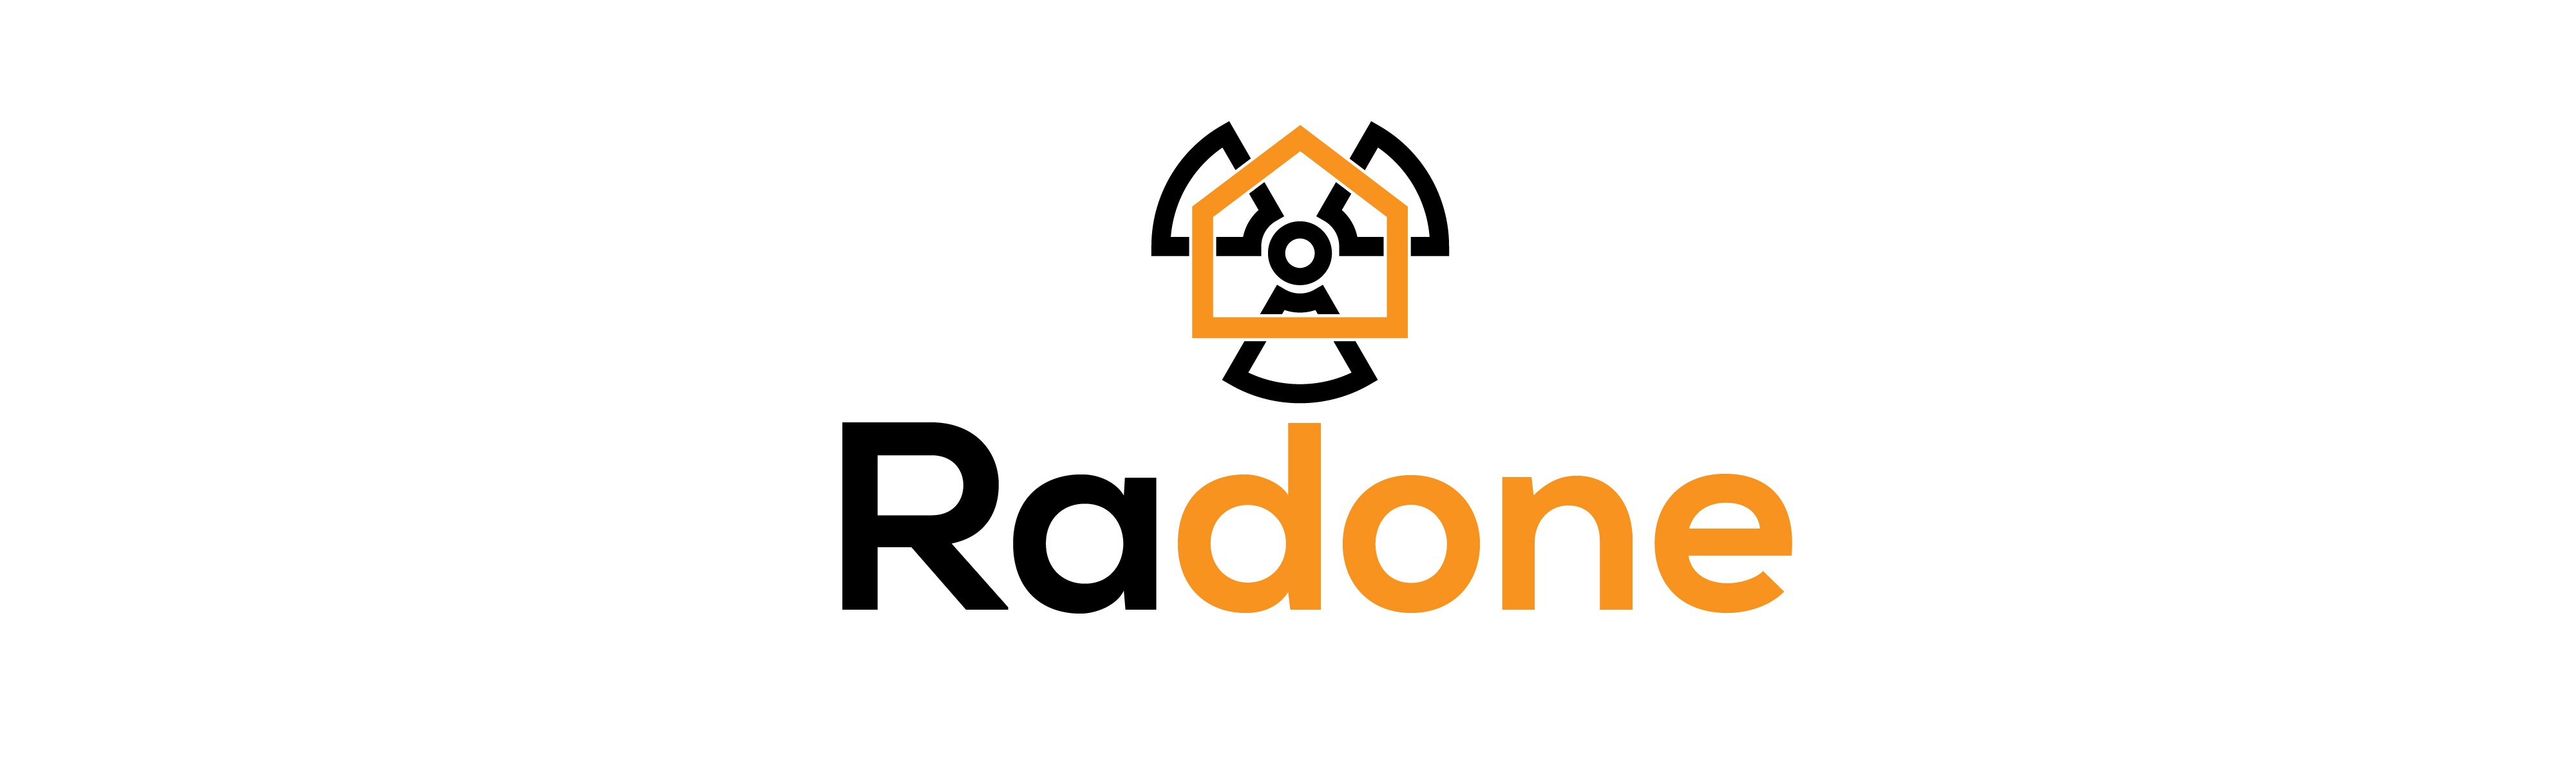 Radone, LLC Logo